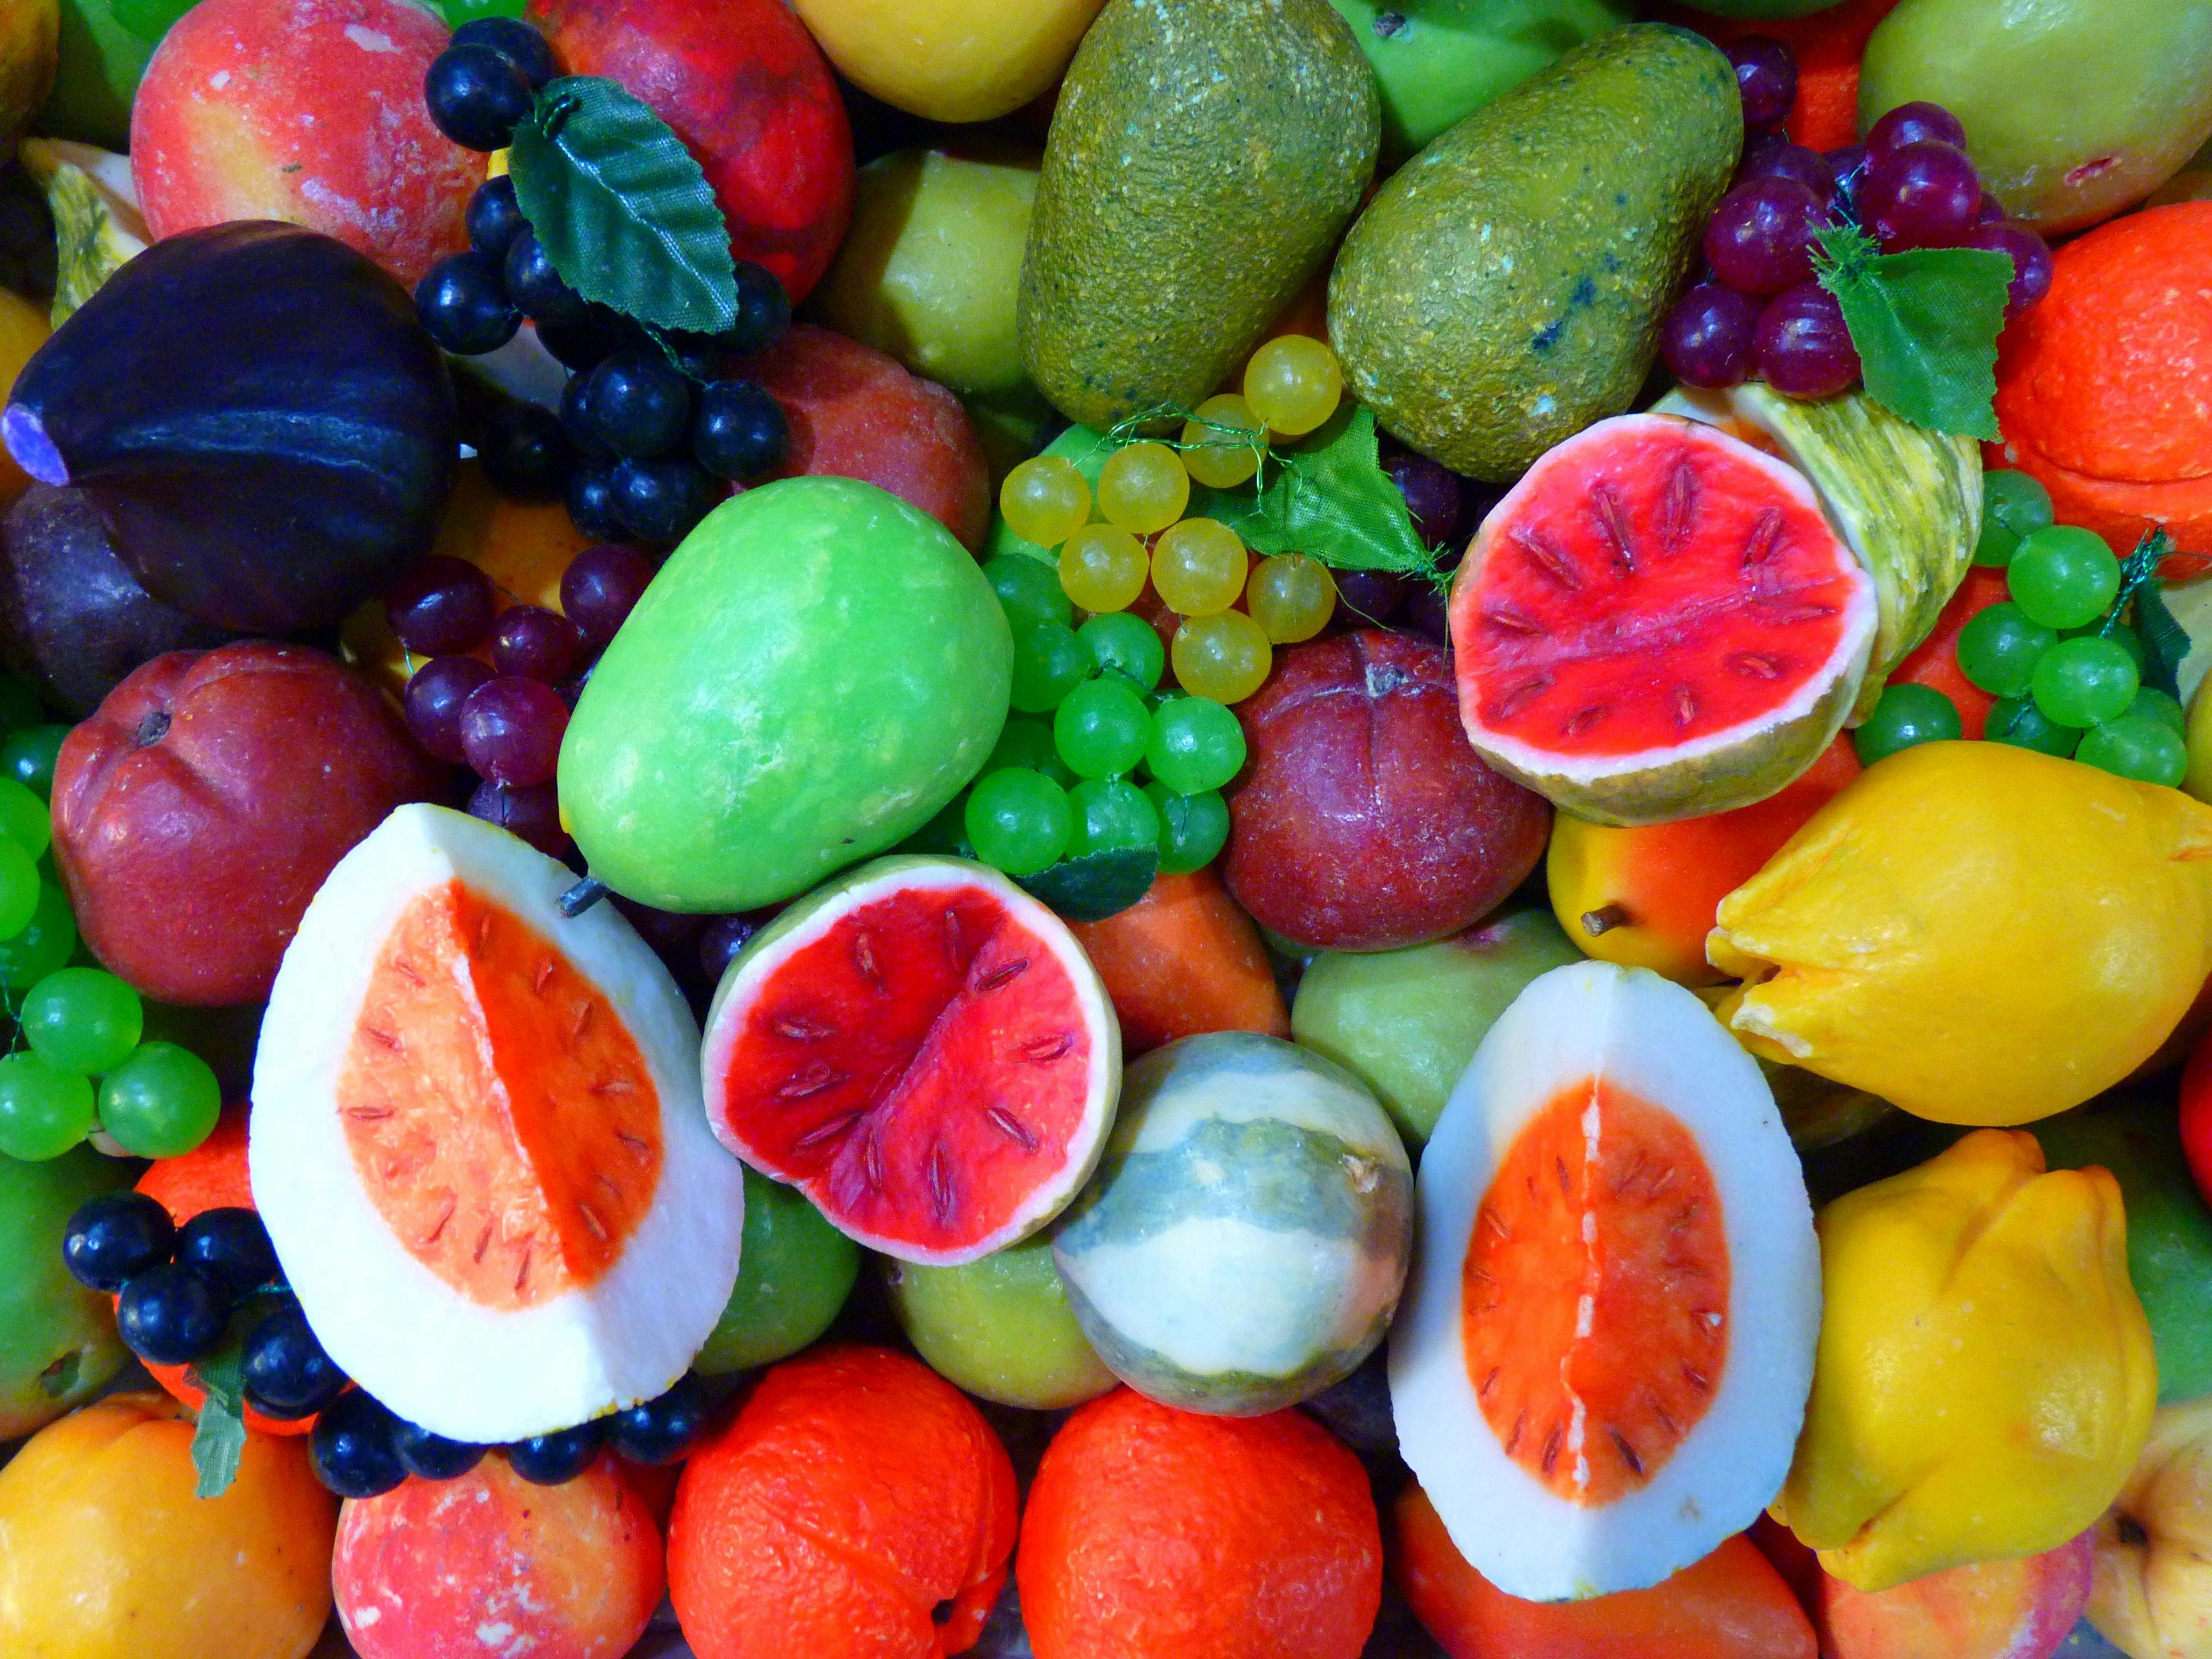 Hình ảnh trái cây đầy màu sắc có thể làm bạn cảm thấy hào hứng và thèm thuồng. Tận hưởng những thứ này ở bất cứ đâu, với hình ảnh trái cây tuyệt đẹp của chúng tôi.